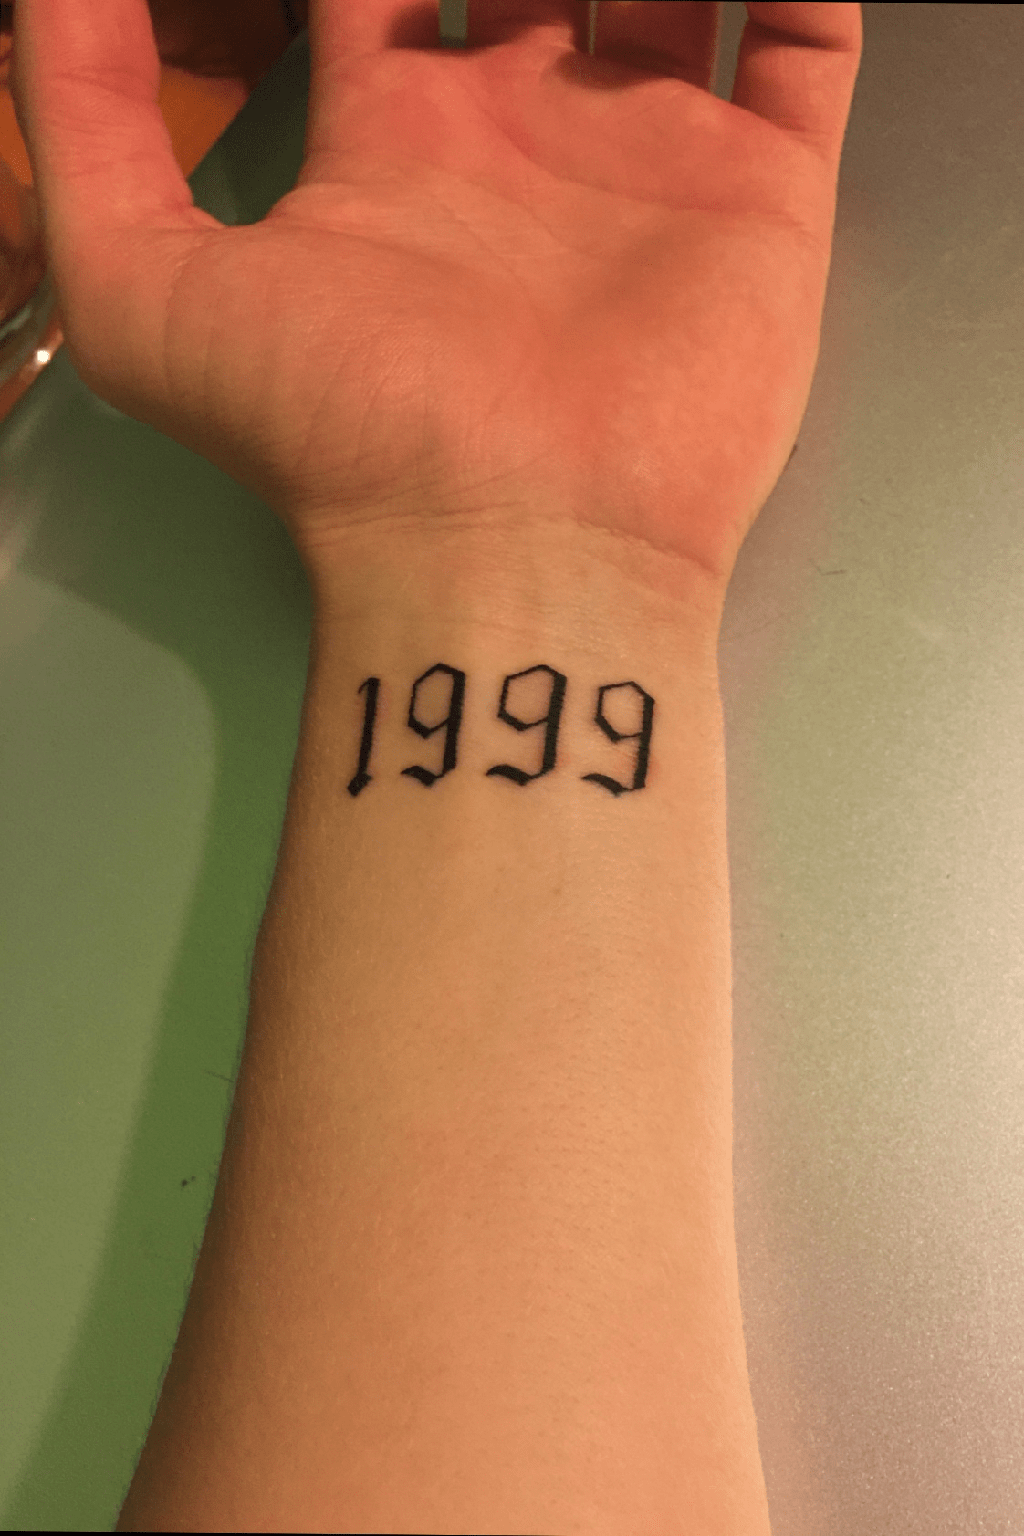 ¿Qué significa el tatuaje de 1999? - 27 - enero 22, 2023